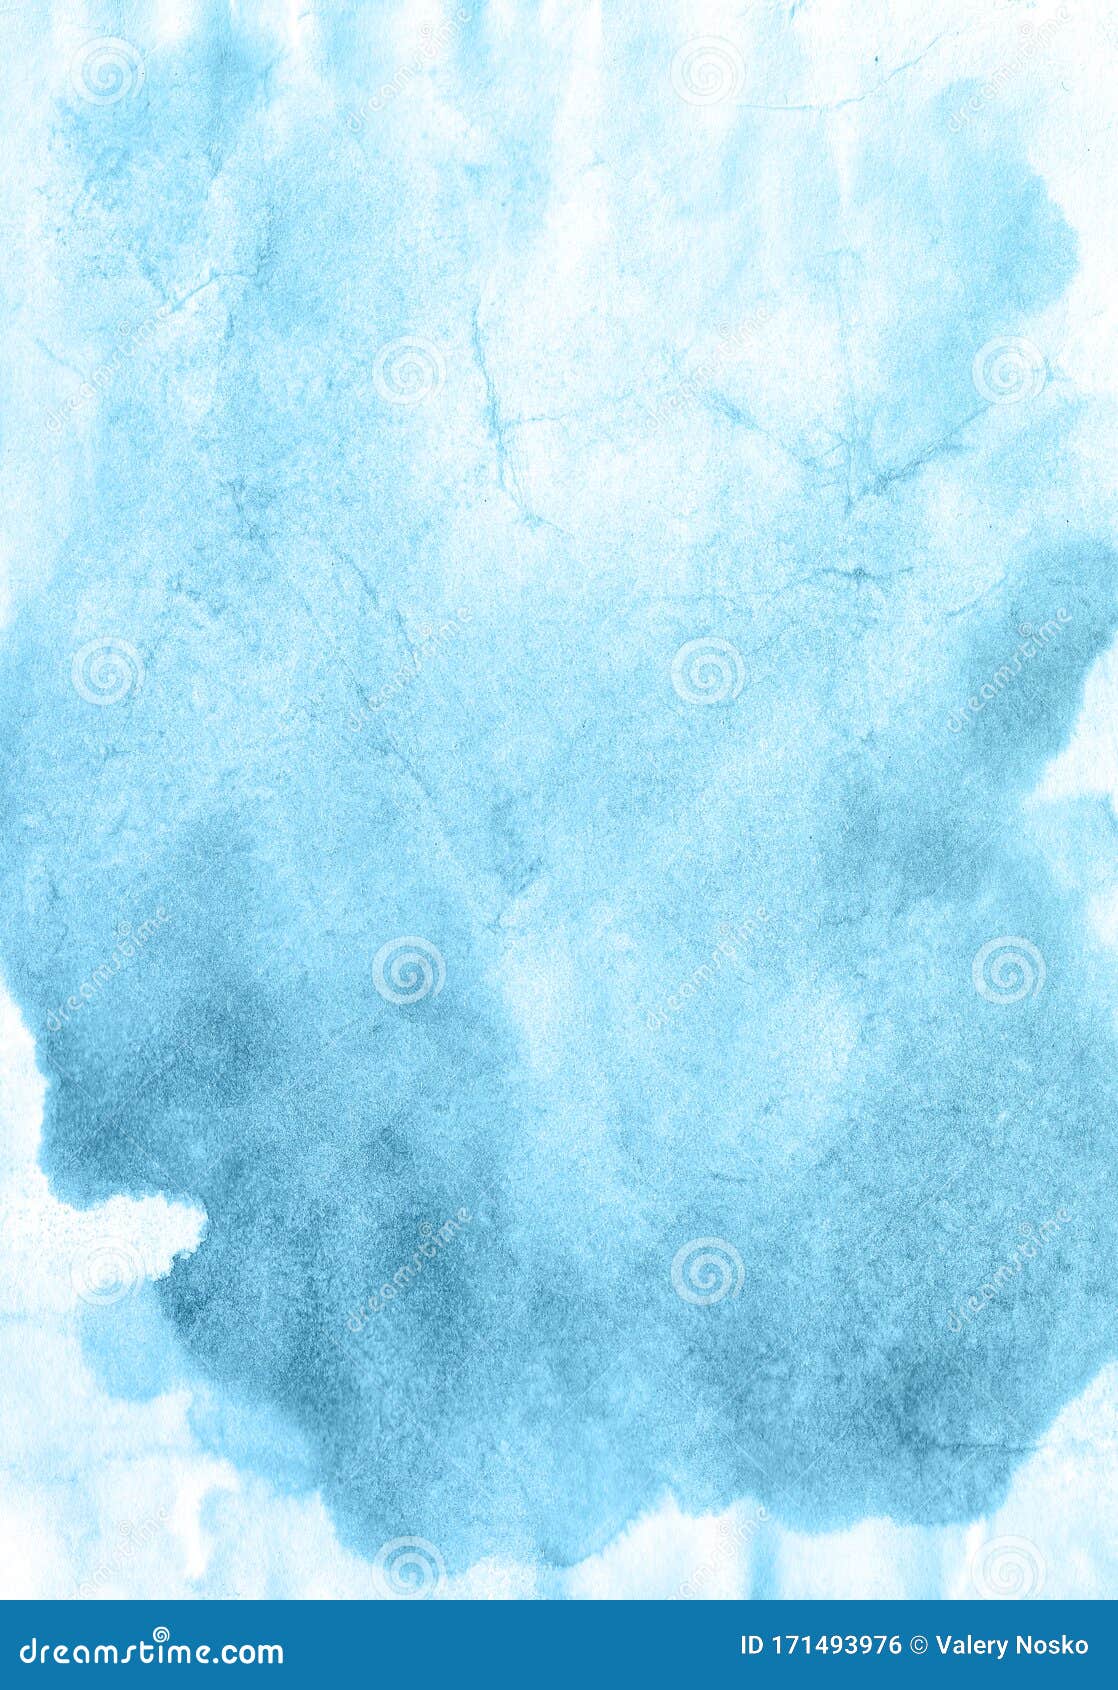 蓝色生态纹理爱手绘水色背景 光栅图库存例证 插画包括有蓝色生态纹理爱手绘水色背景 光栅图